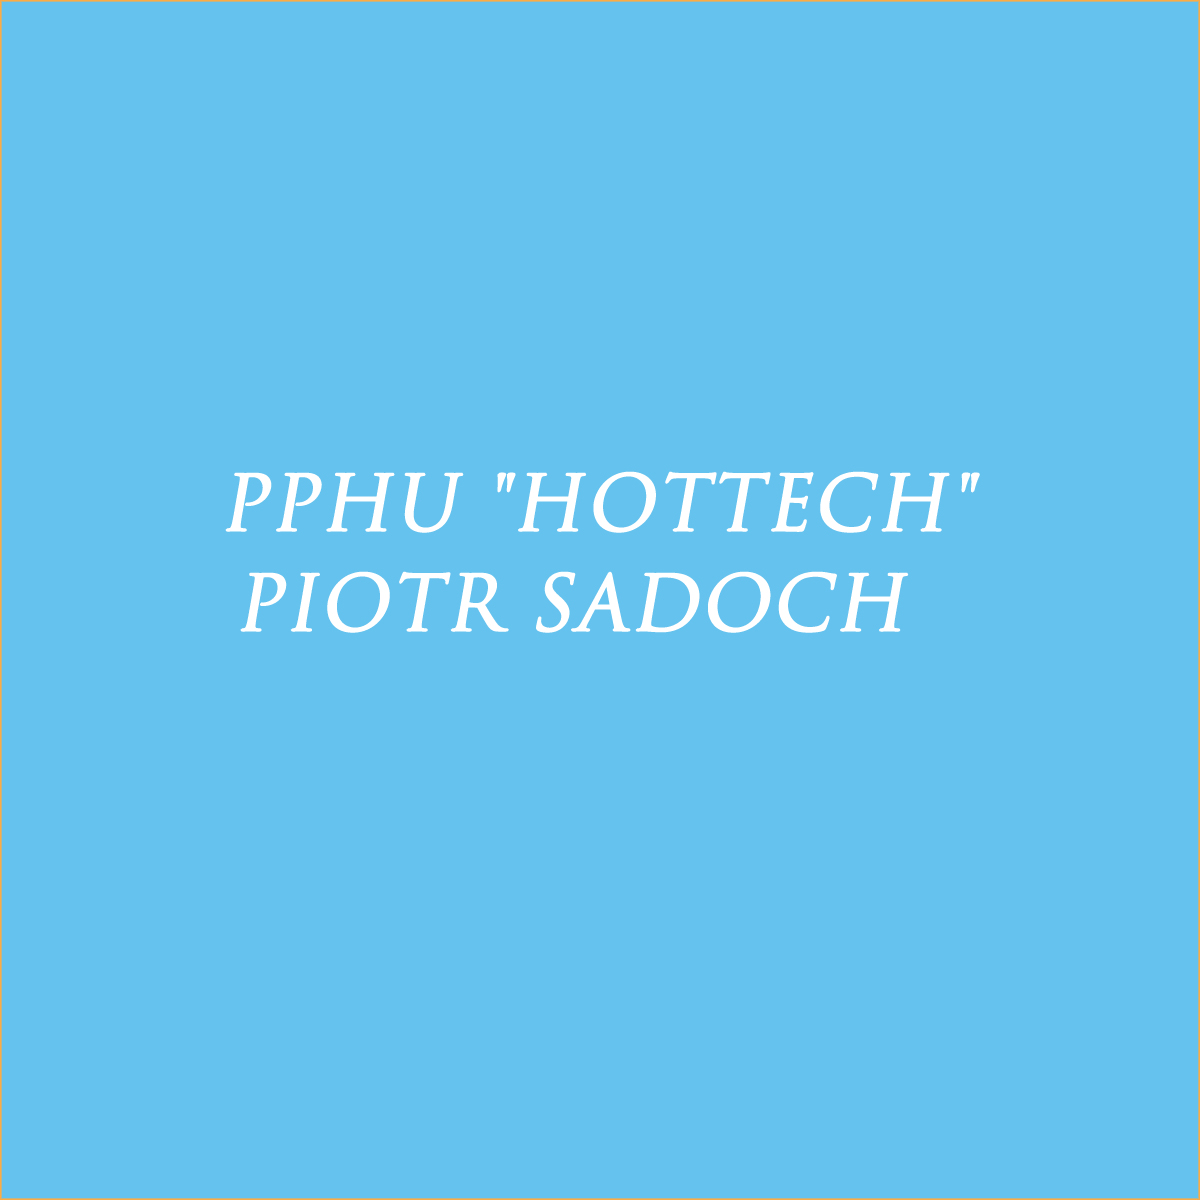 Piotr Sadoch